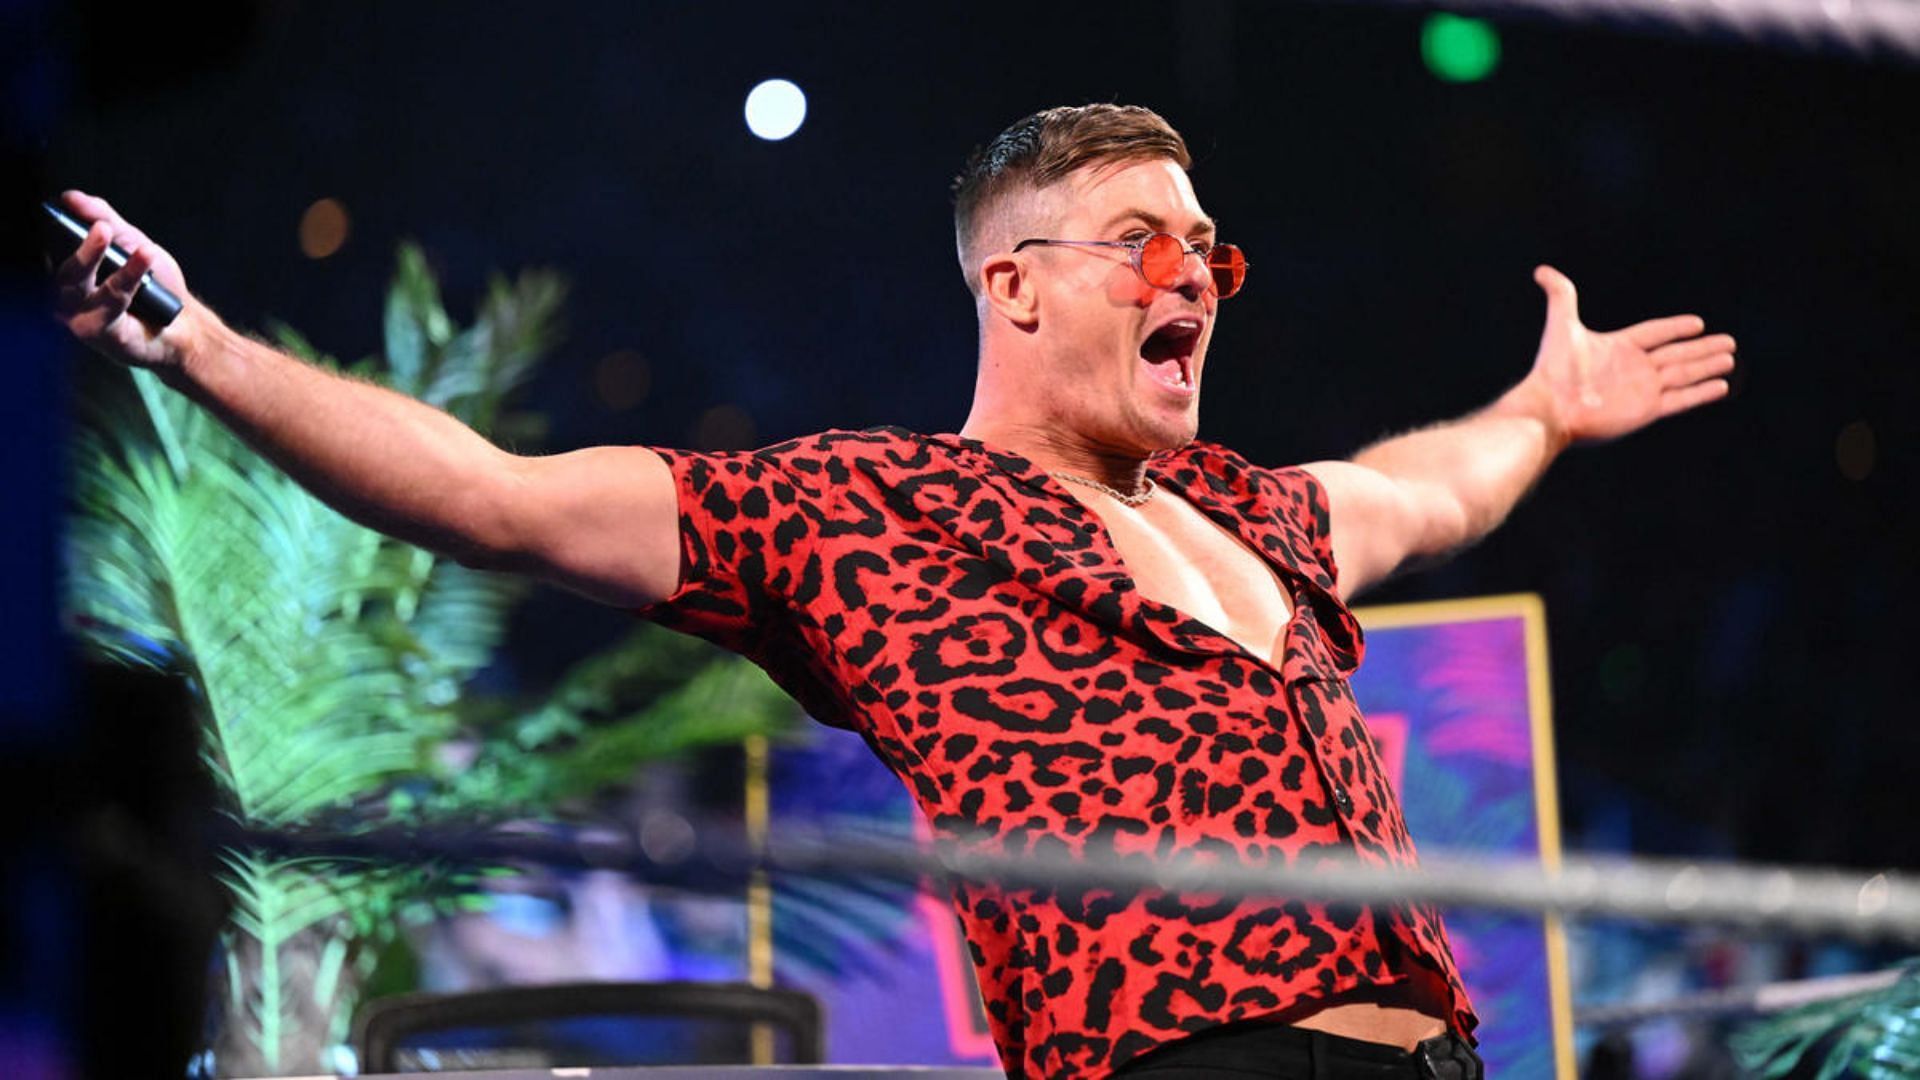 Waller will host John Cena on his popular talk show this Friday